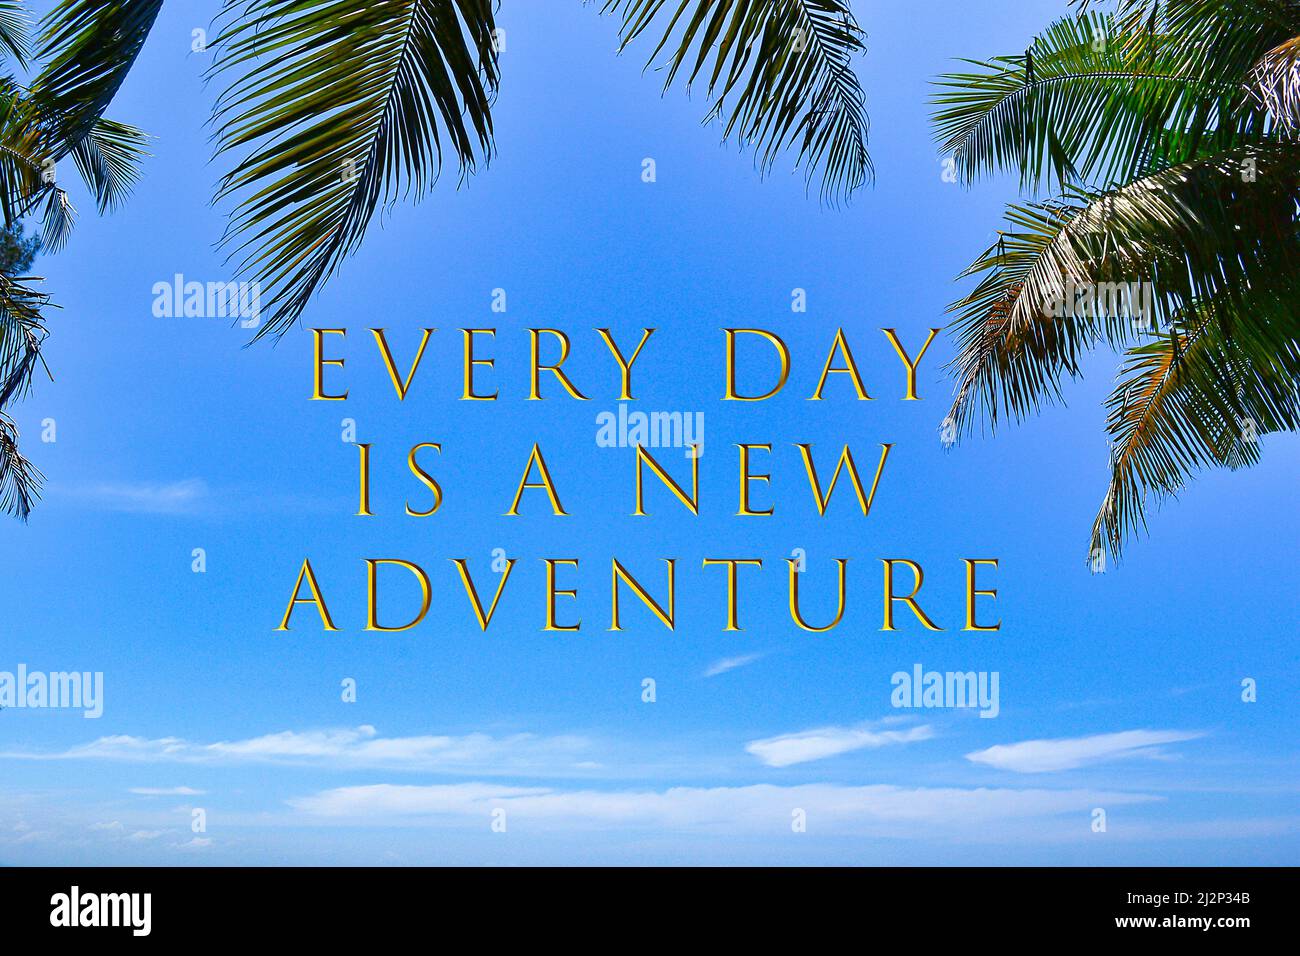 Citation motivante et inspirante sur l'image des feuilles de palmier contre le ciel bleu - chaque jour est une nouvelle aventure. Banque D'Images